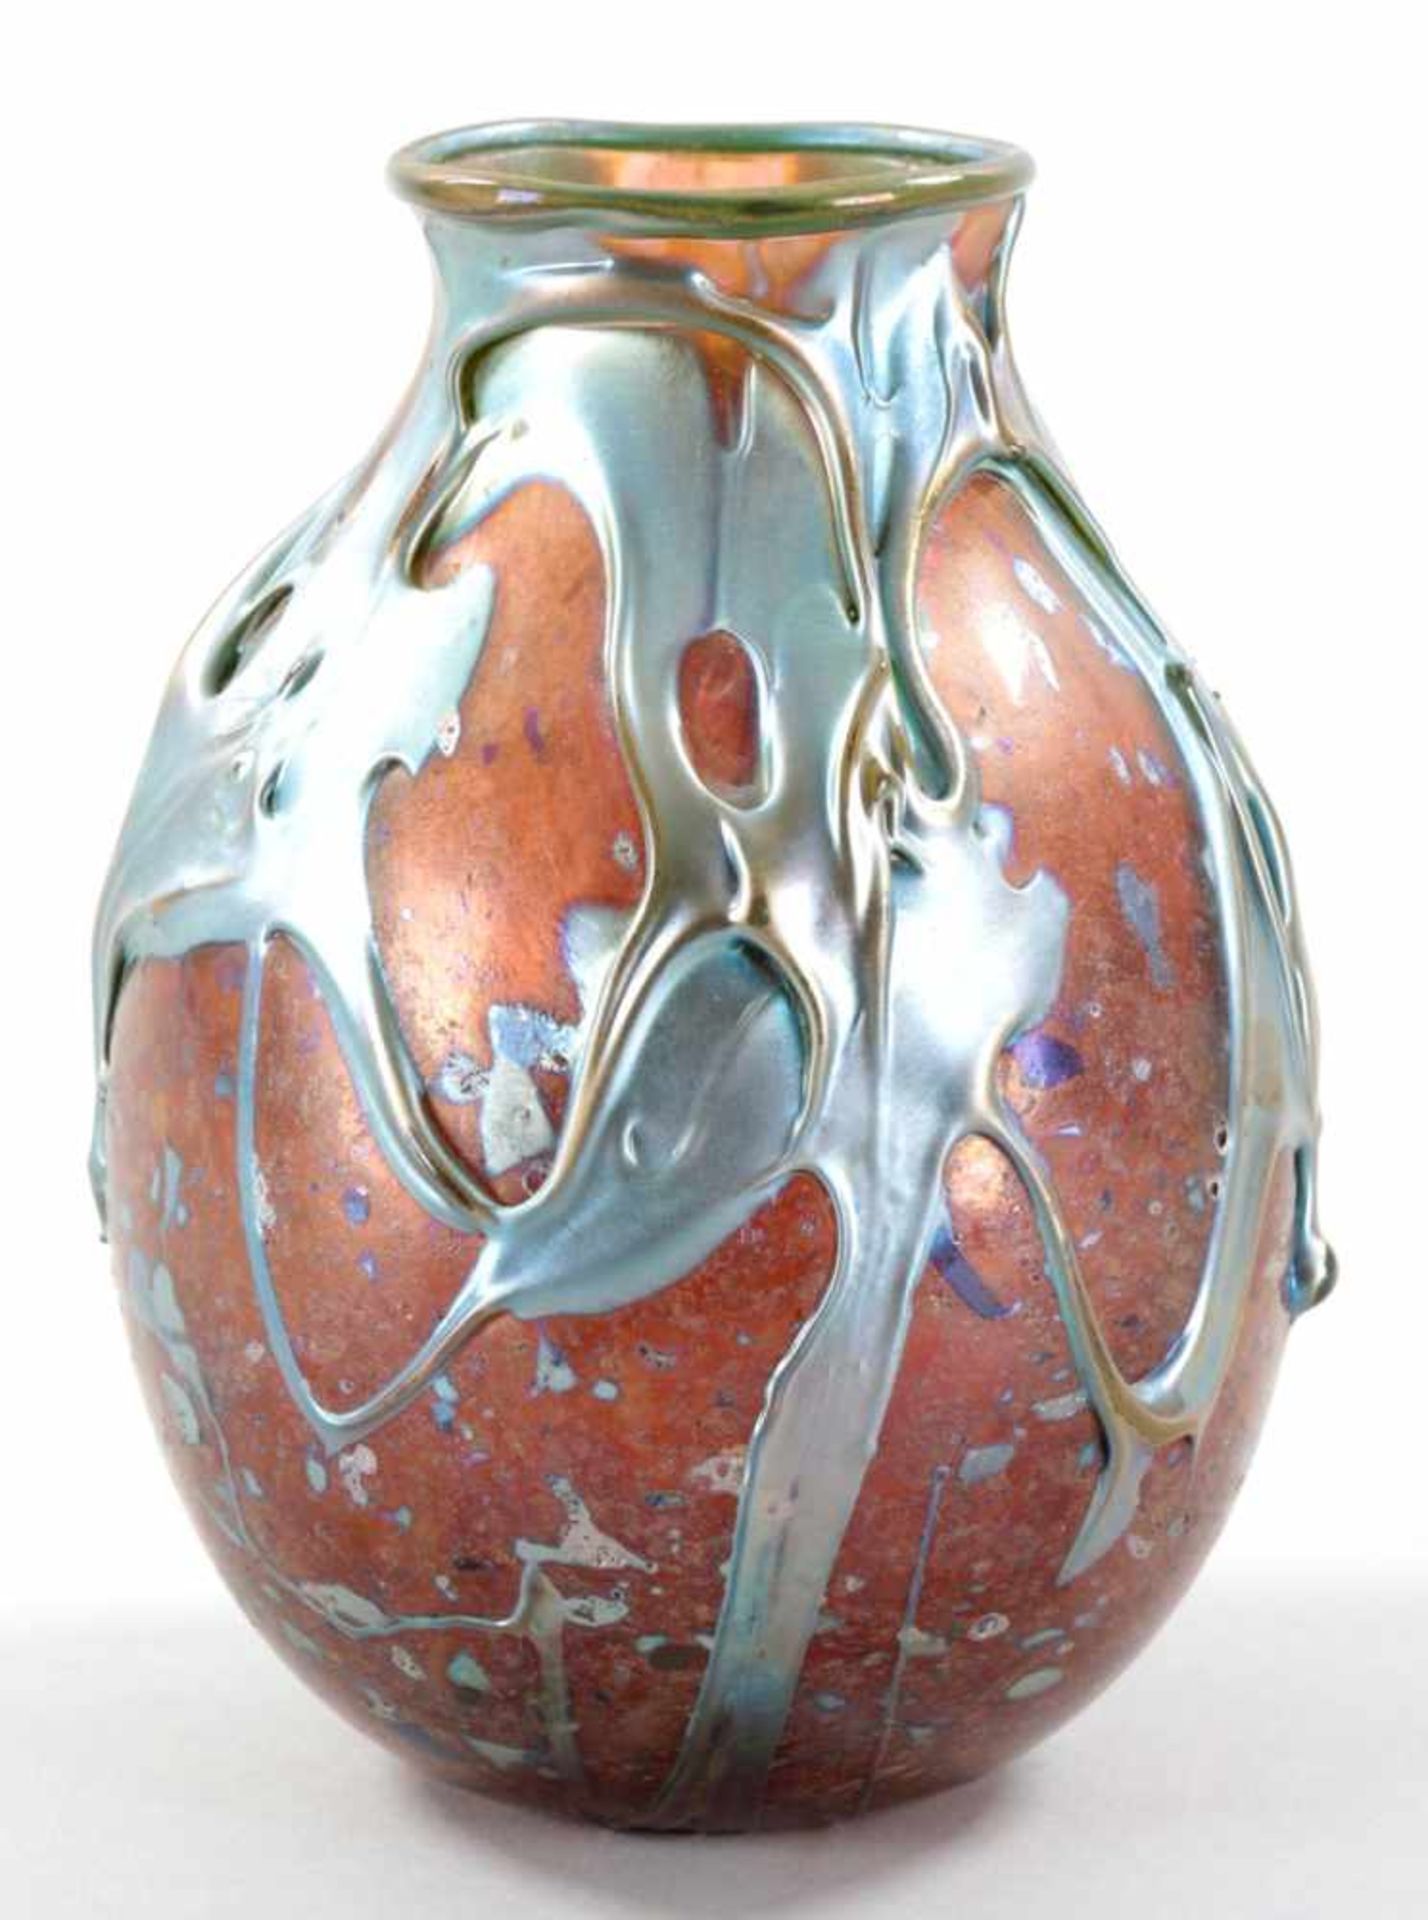 VaseGlas, Lotton Art Glass (USA), 1979 Studio-Glas.- Im Stile des Jugendstils m. Aufschmelzungen